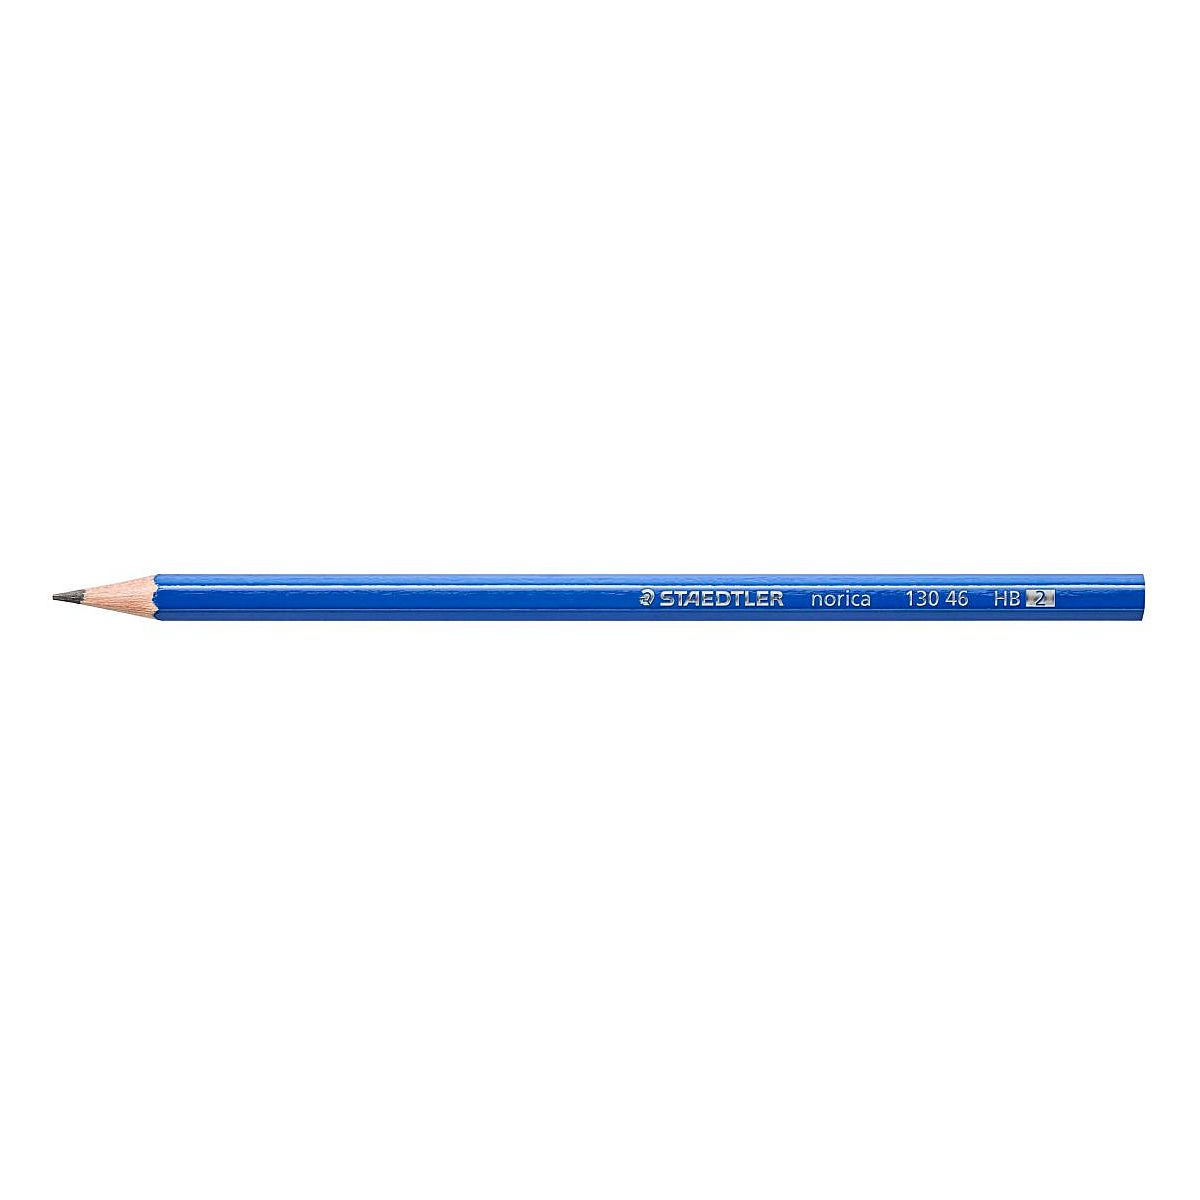 Ołówek Staedtler HB (S 130 46-HB)